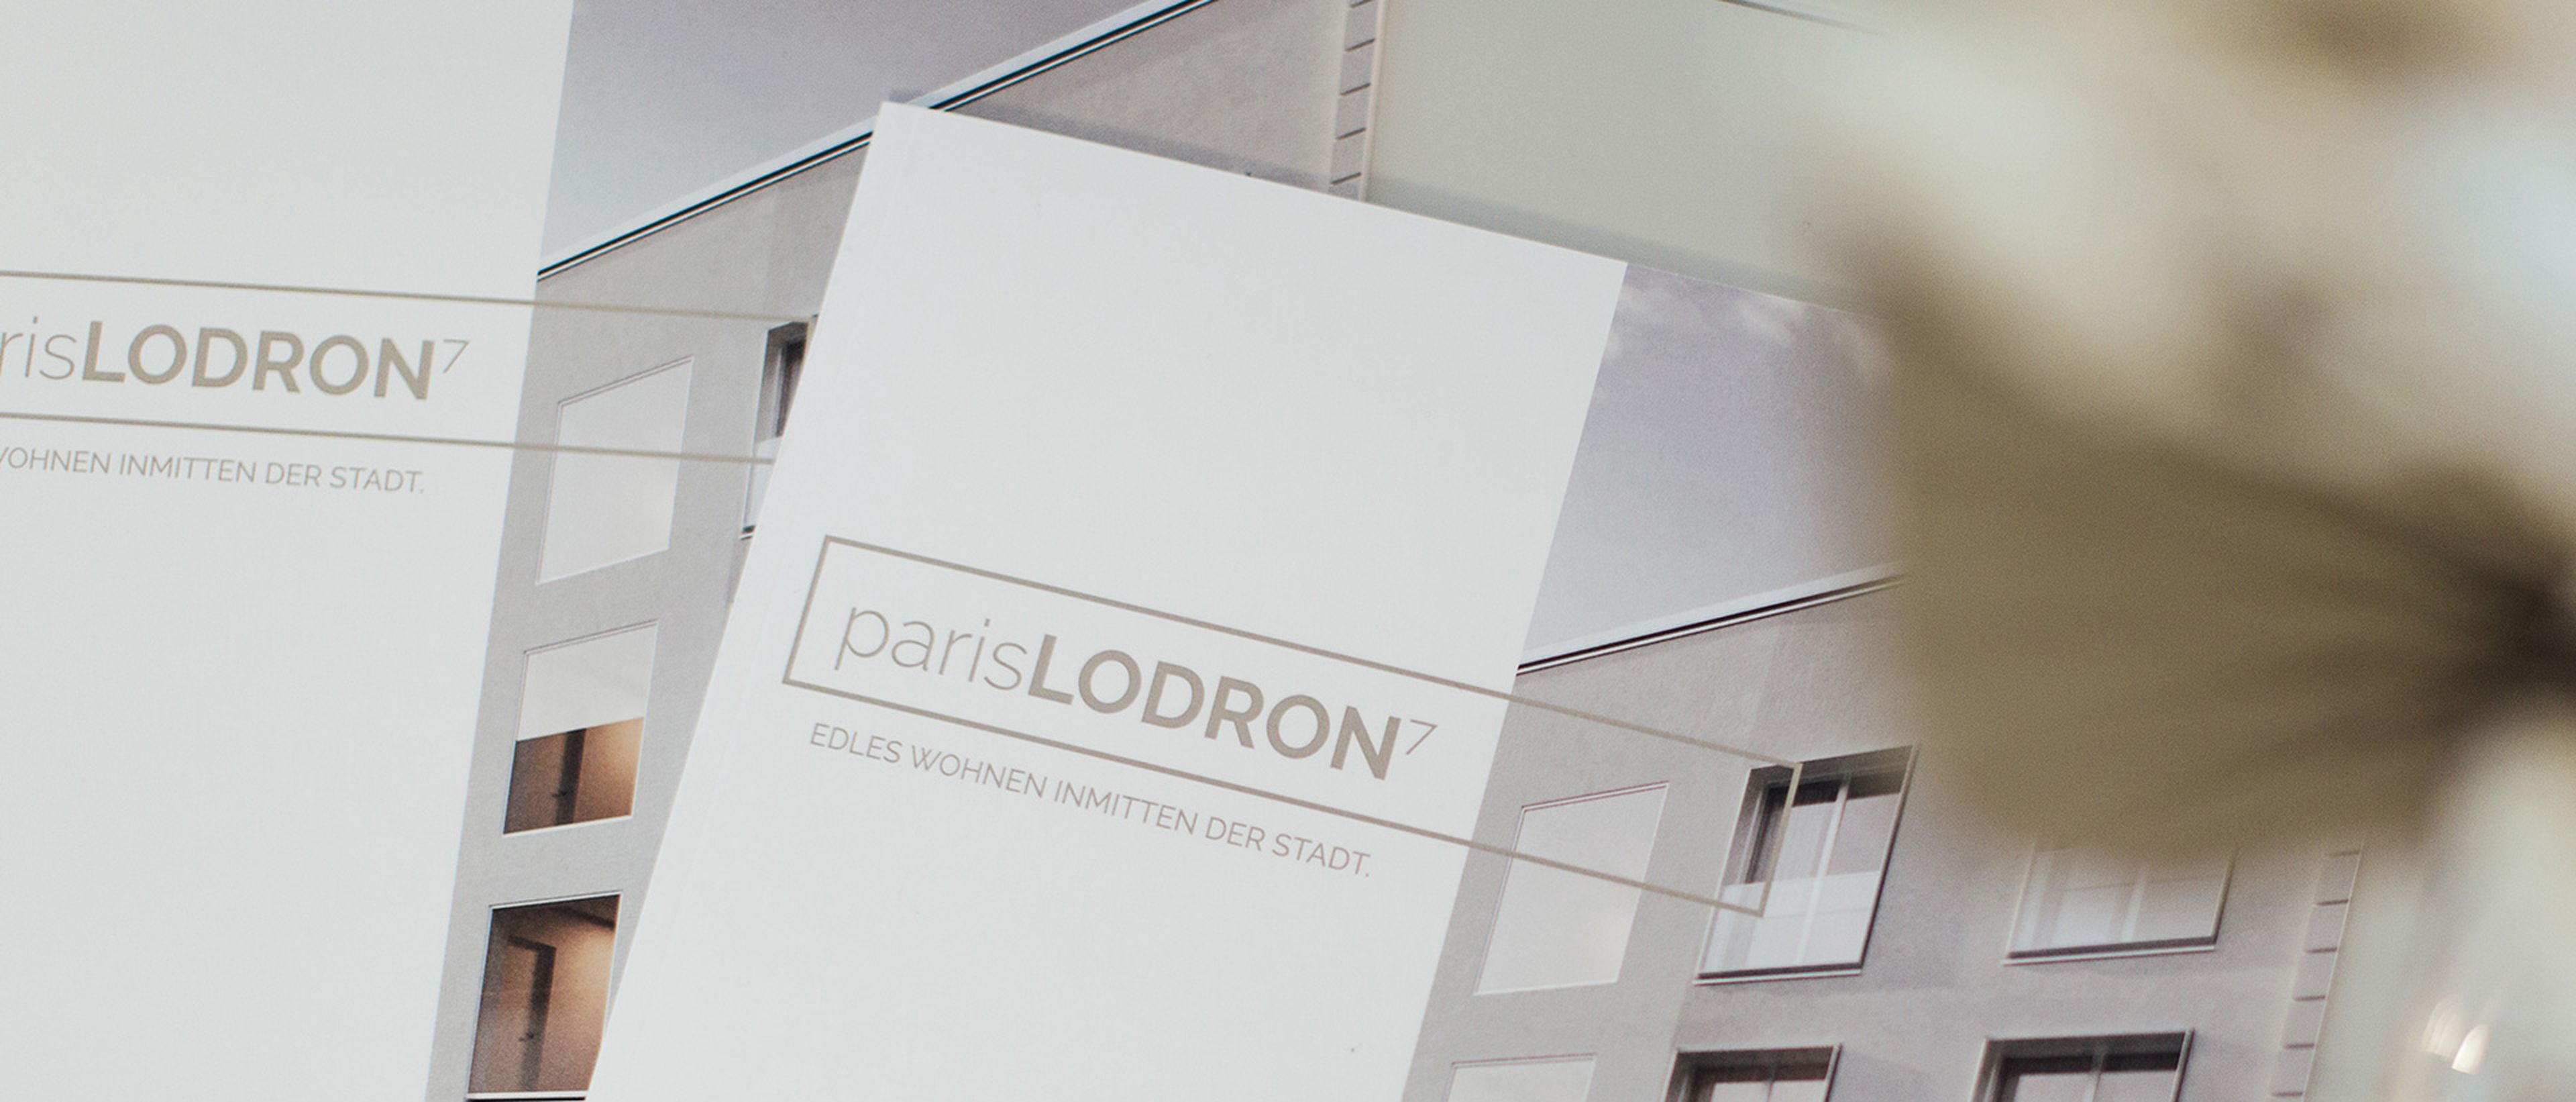 Zwei Folder zur Bauprojekt Wohnzone Paris Lodron 7 liegen auf einem Tisch